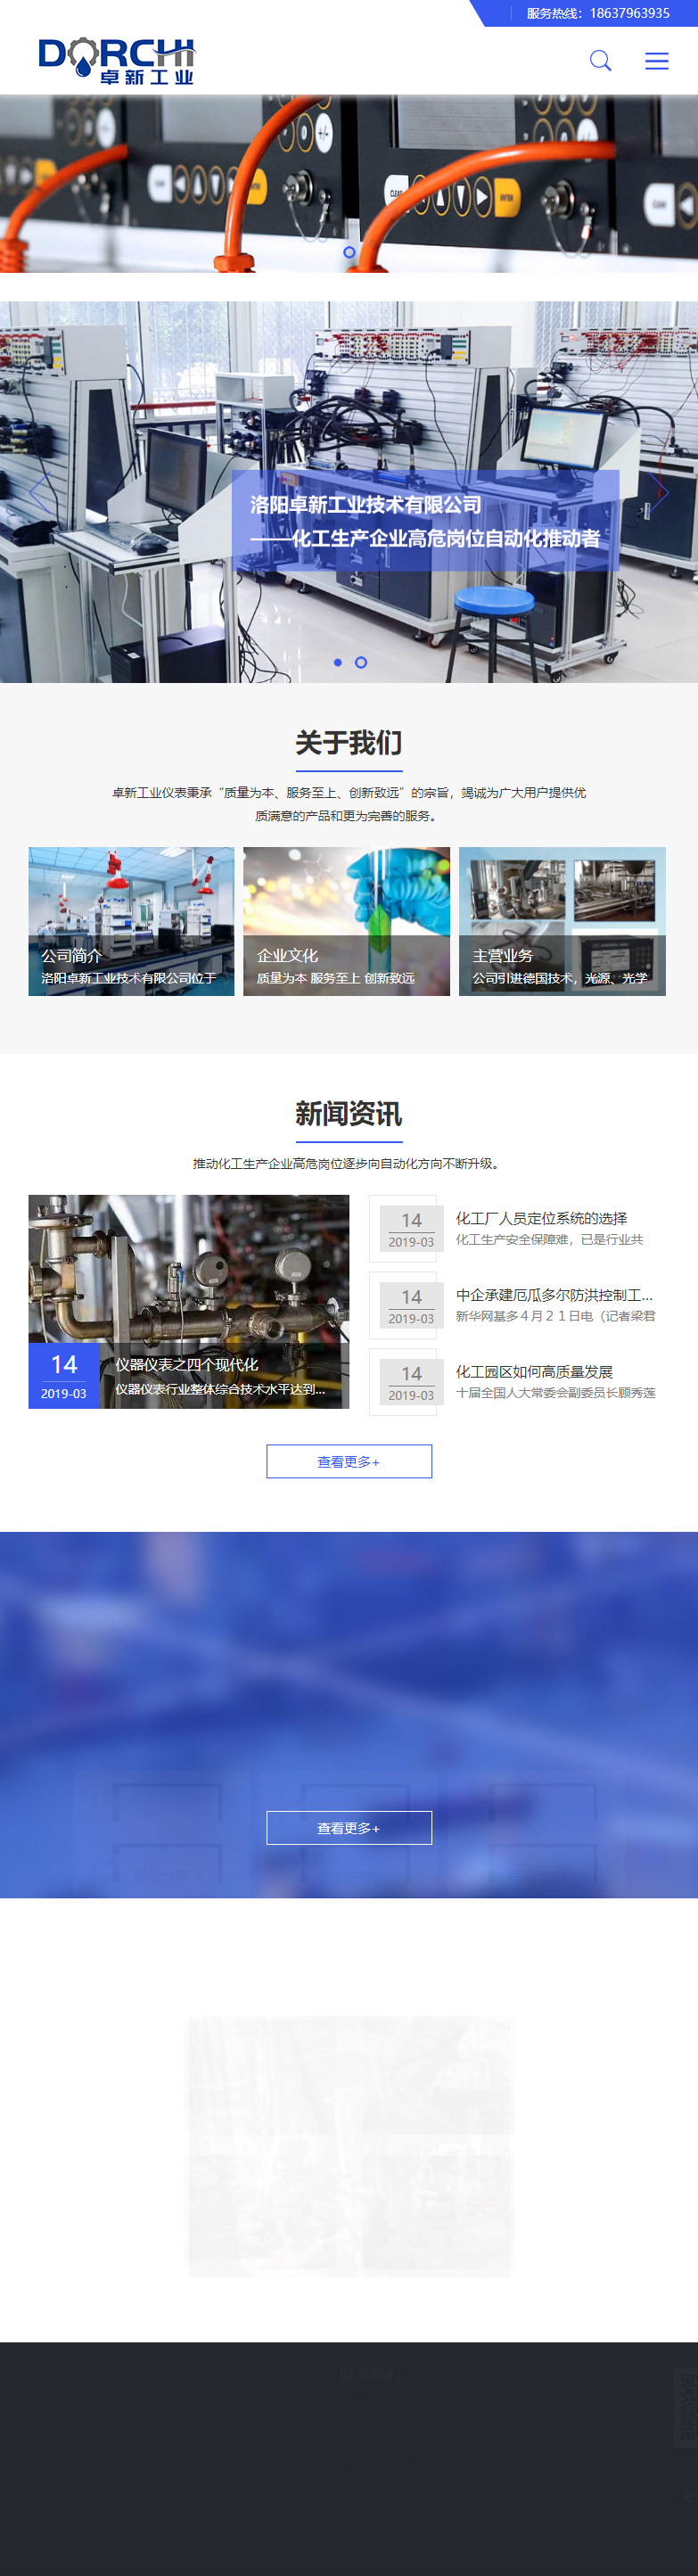 洛阳卓新工业技术有限公司网站案例